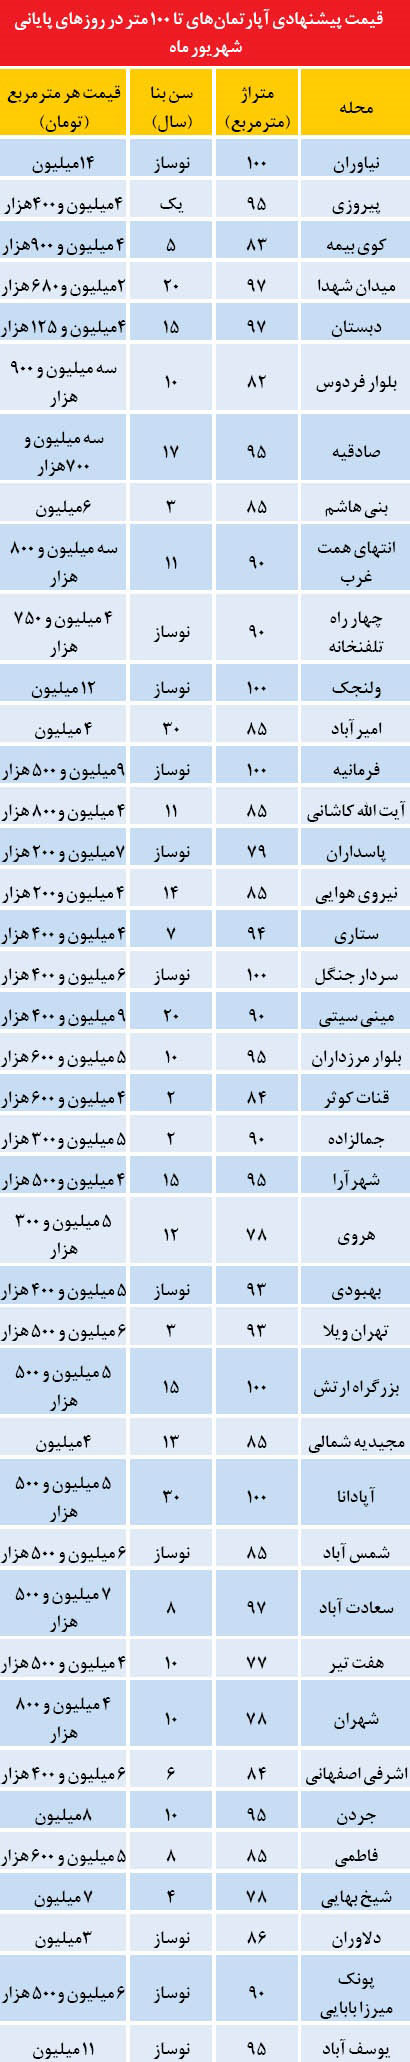 قیمت آپارتمان های تا 100 در تهران